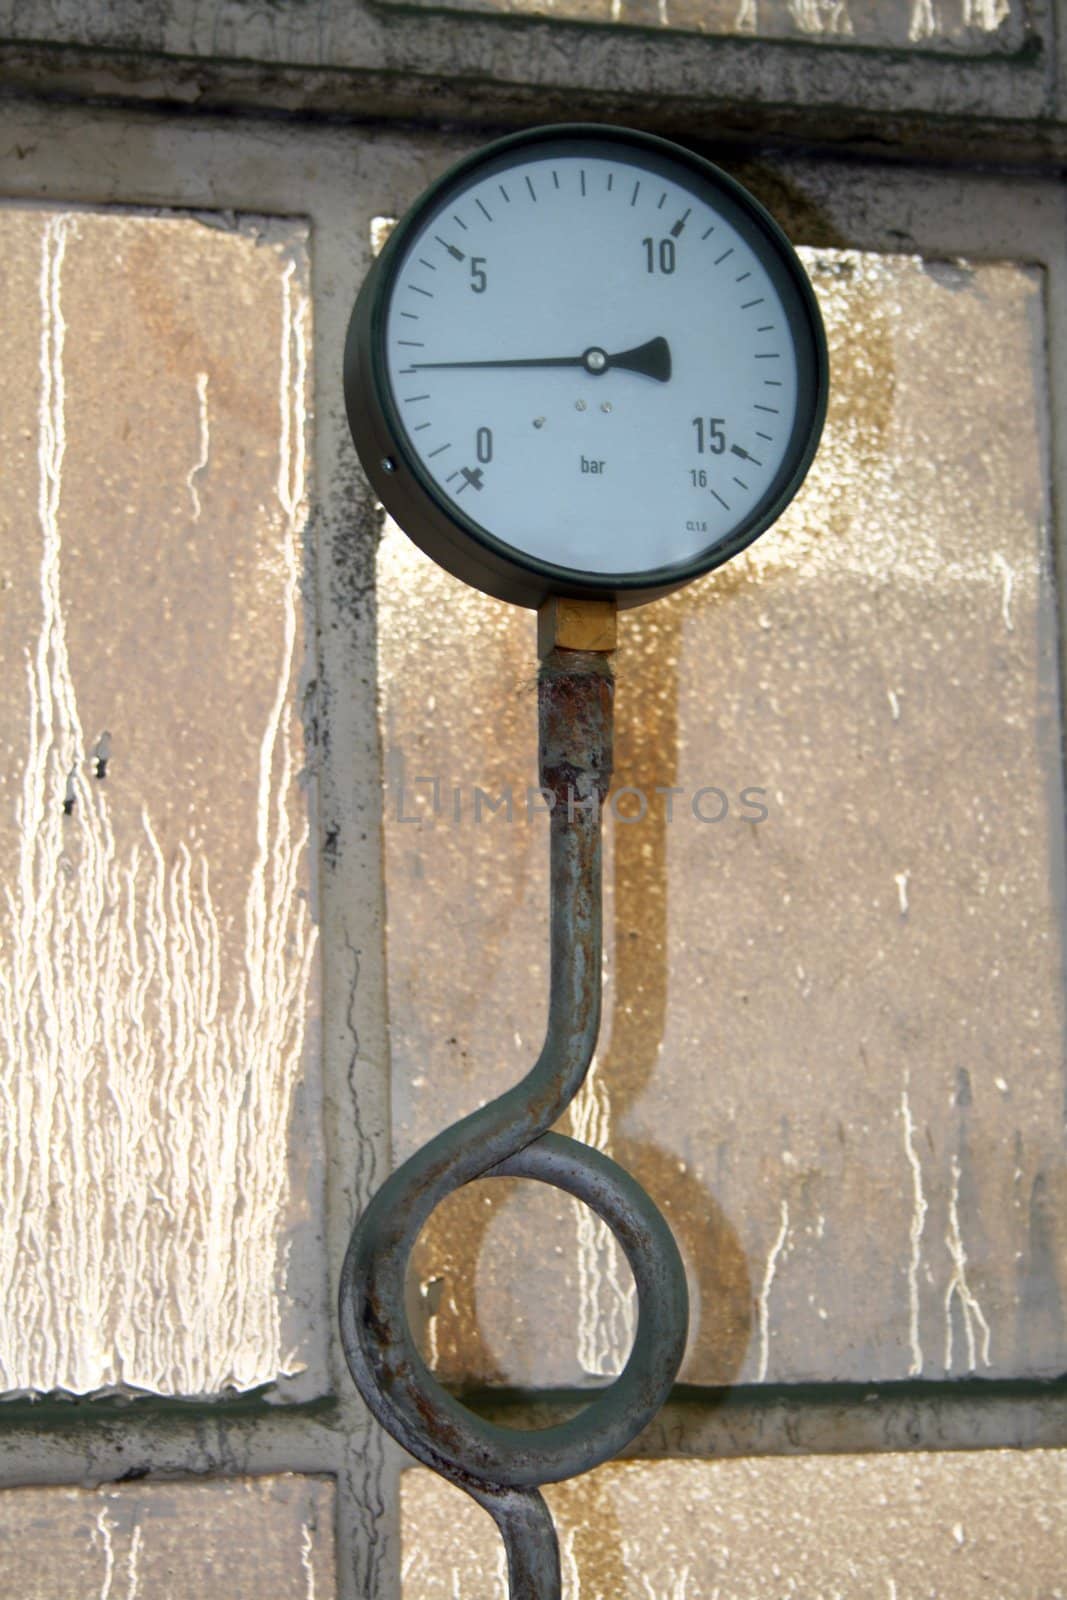 Industrial pressure gauge with a steel loop